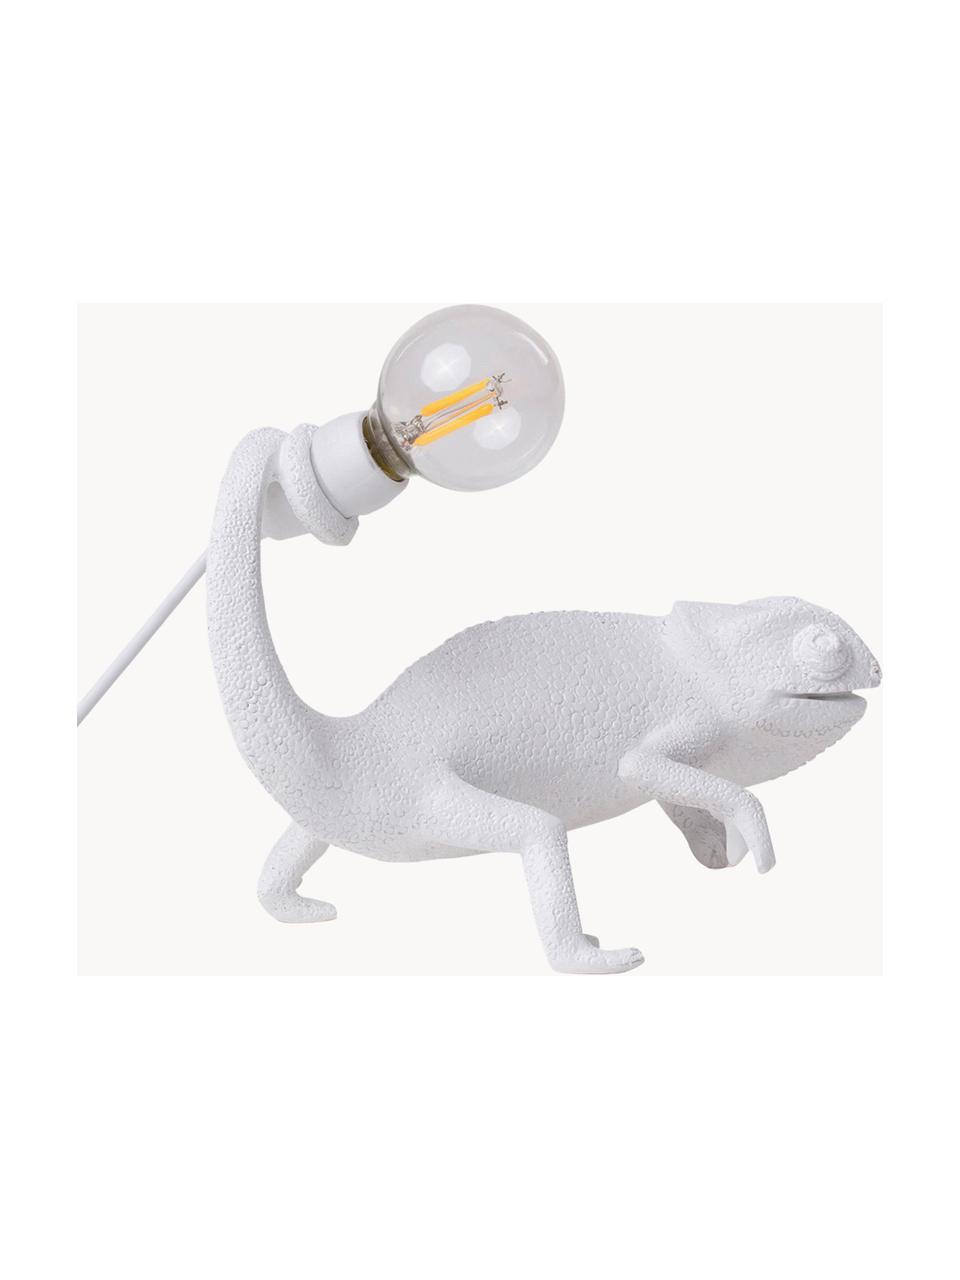 Kleine Designer LED-Tischlampe Chameleon mit USB-Anschluss, Weiß, B 17 x H 14 cm